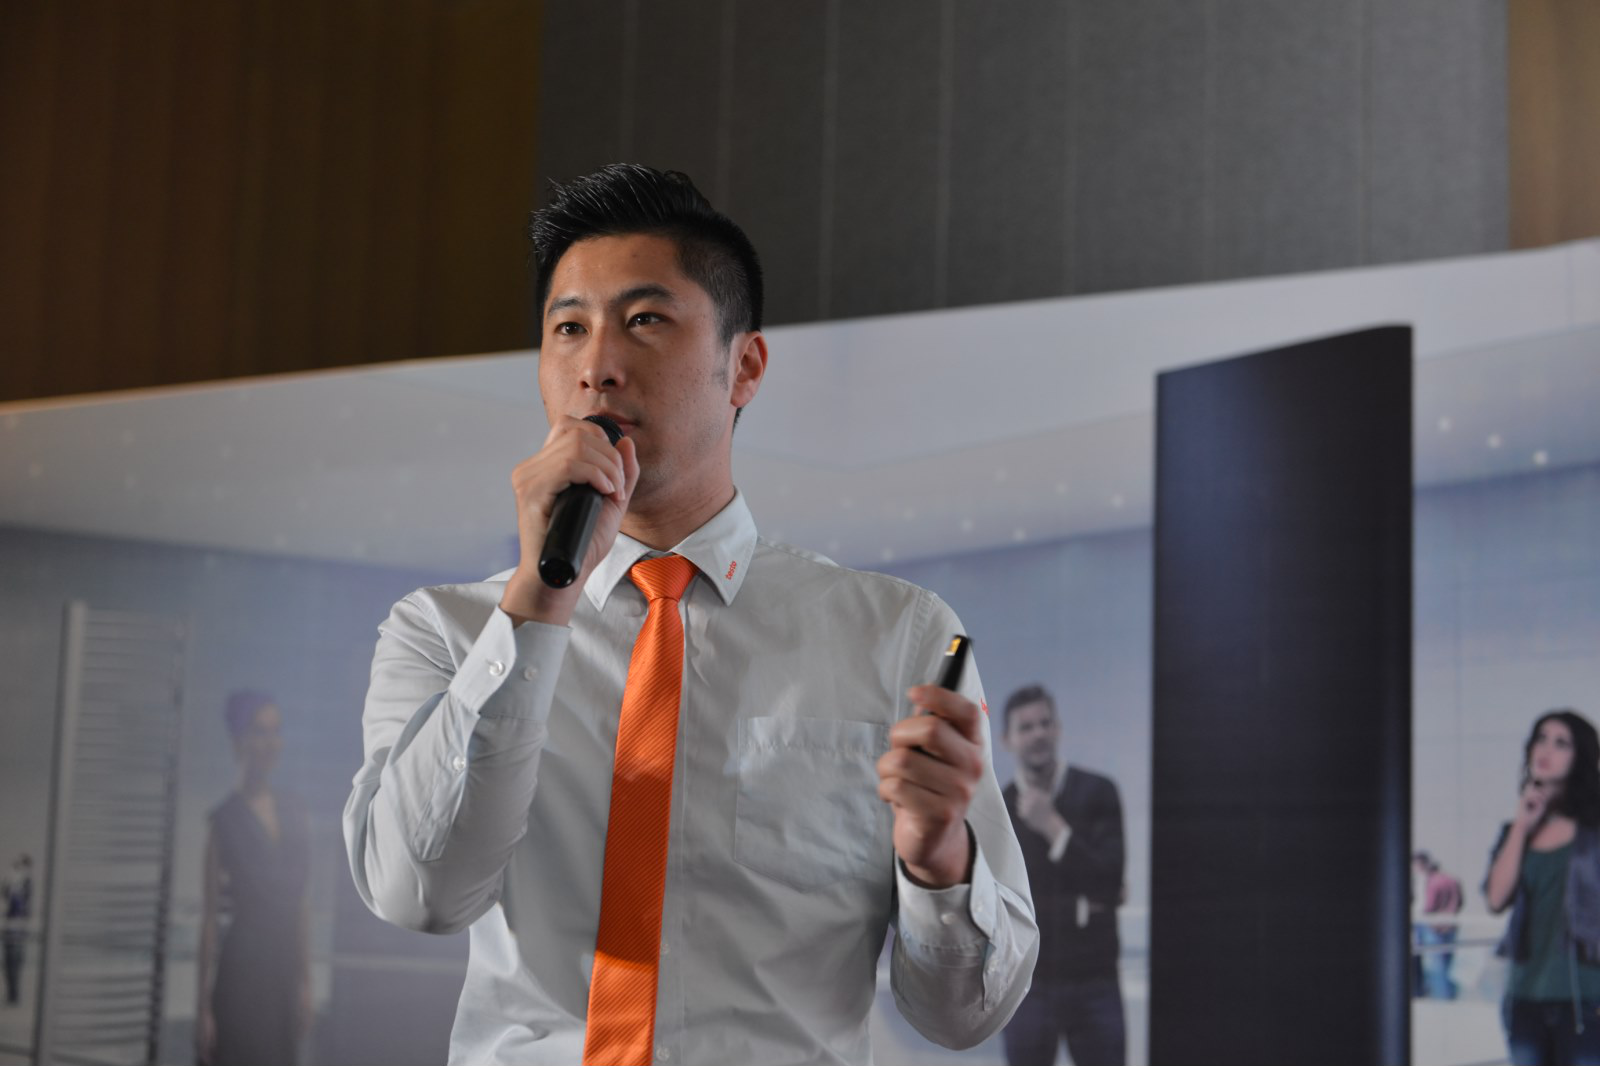 德图仪器国际贸易（上海）有限公司 大区经理宦青做主题演讲